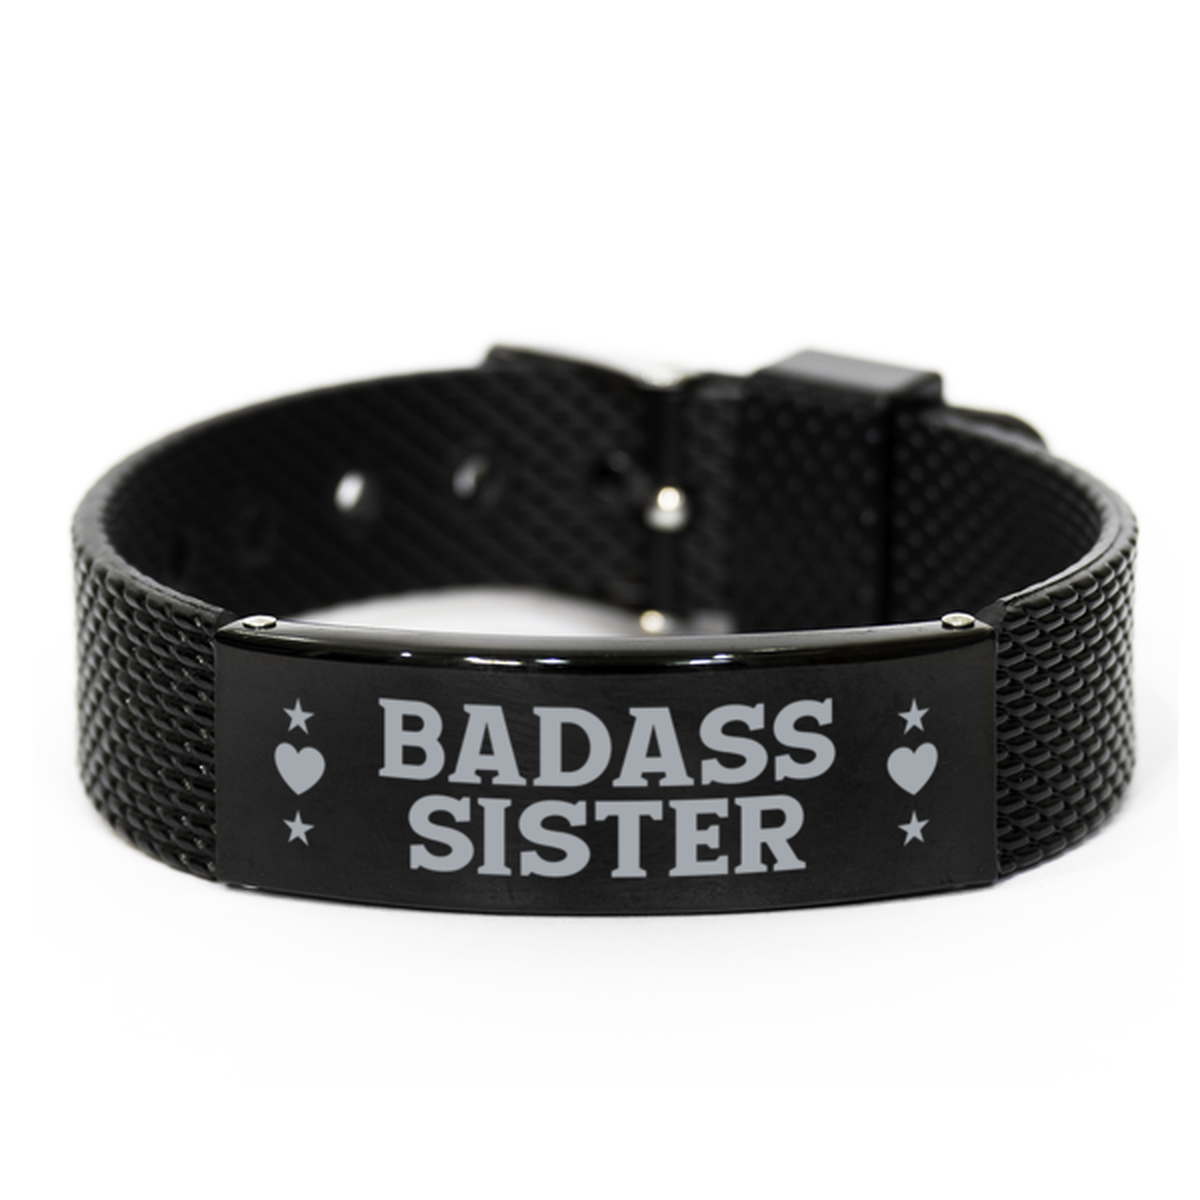 Sister Black Shark Mesh Bracelet, Badass Sister, Funny Family Gifts For Sister From Brother Sister